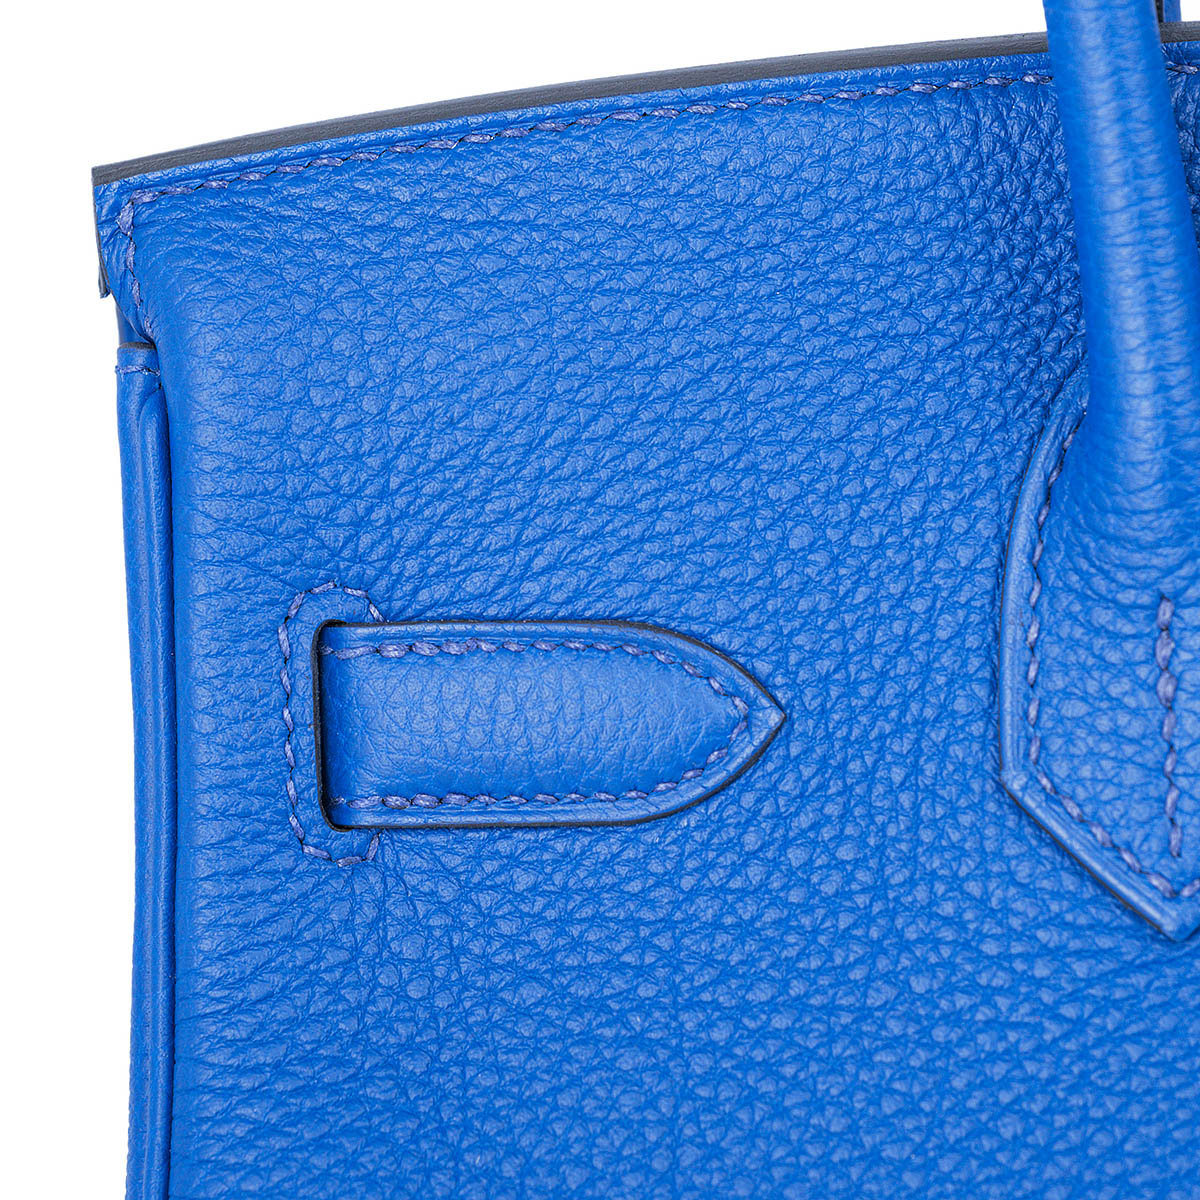 Hermes Birkin 25 Togo Royal Bleu - GB10461M - Global Boutique